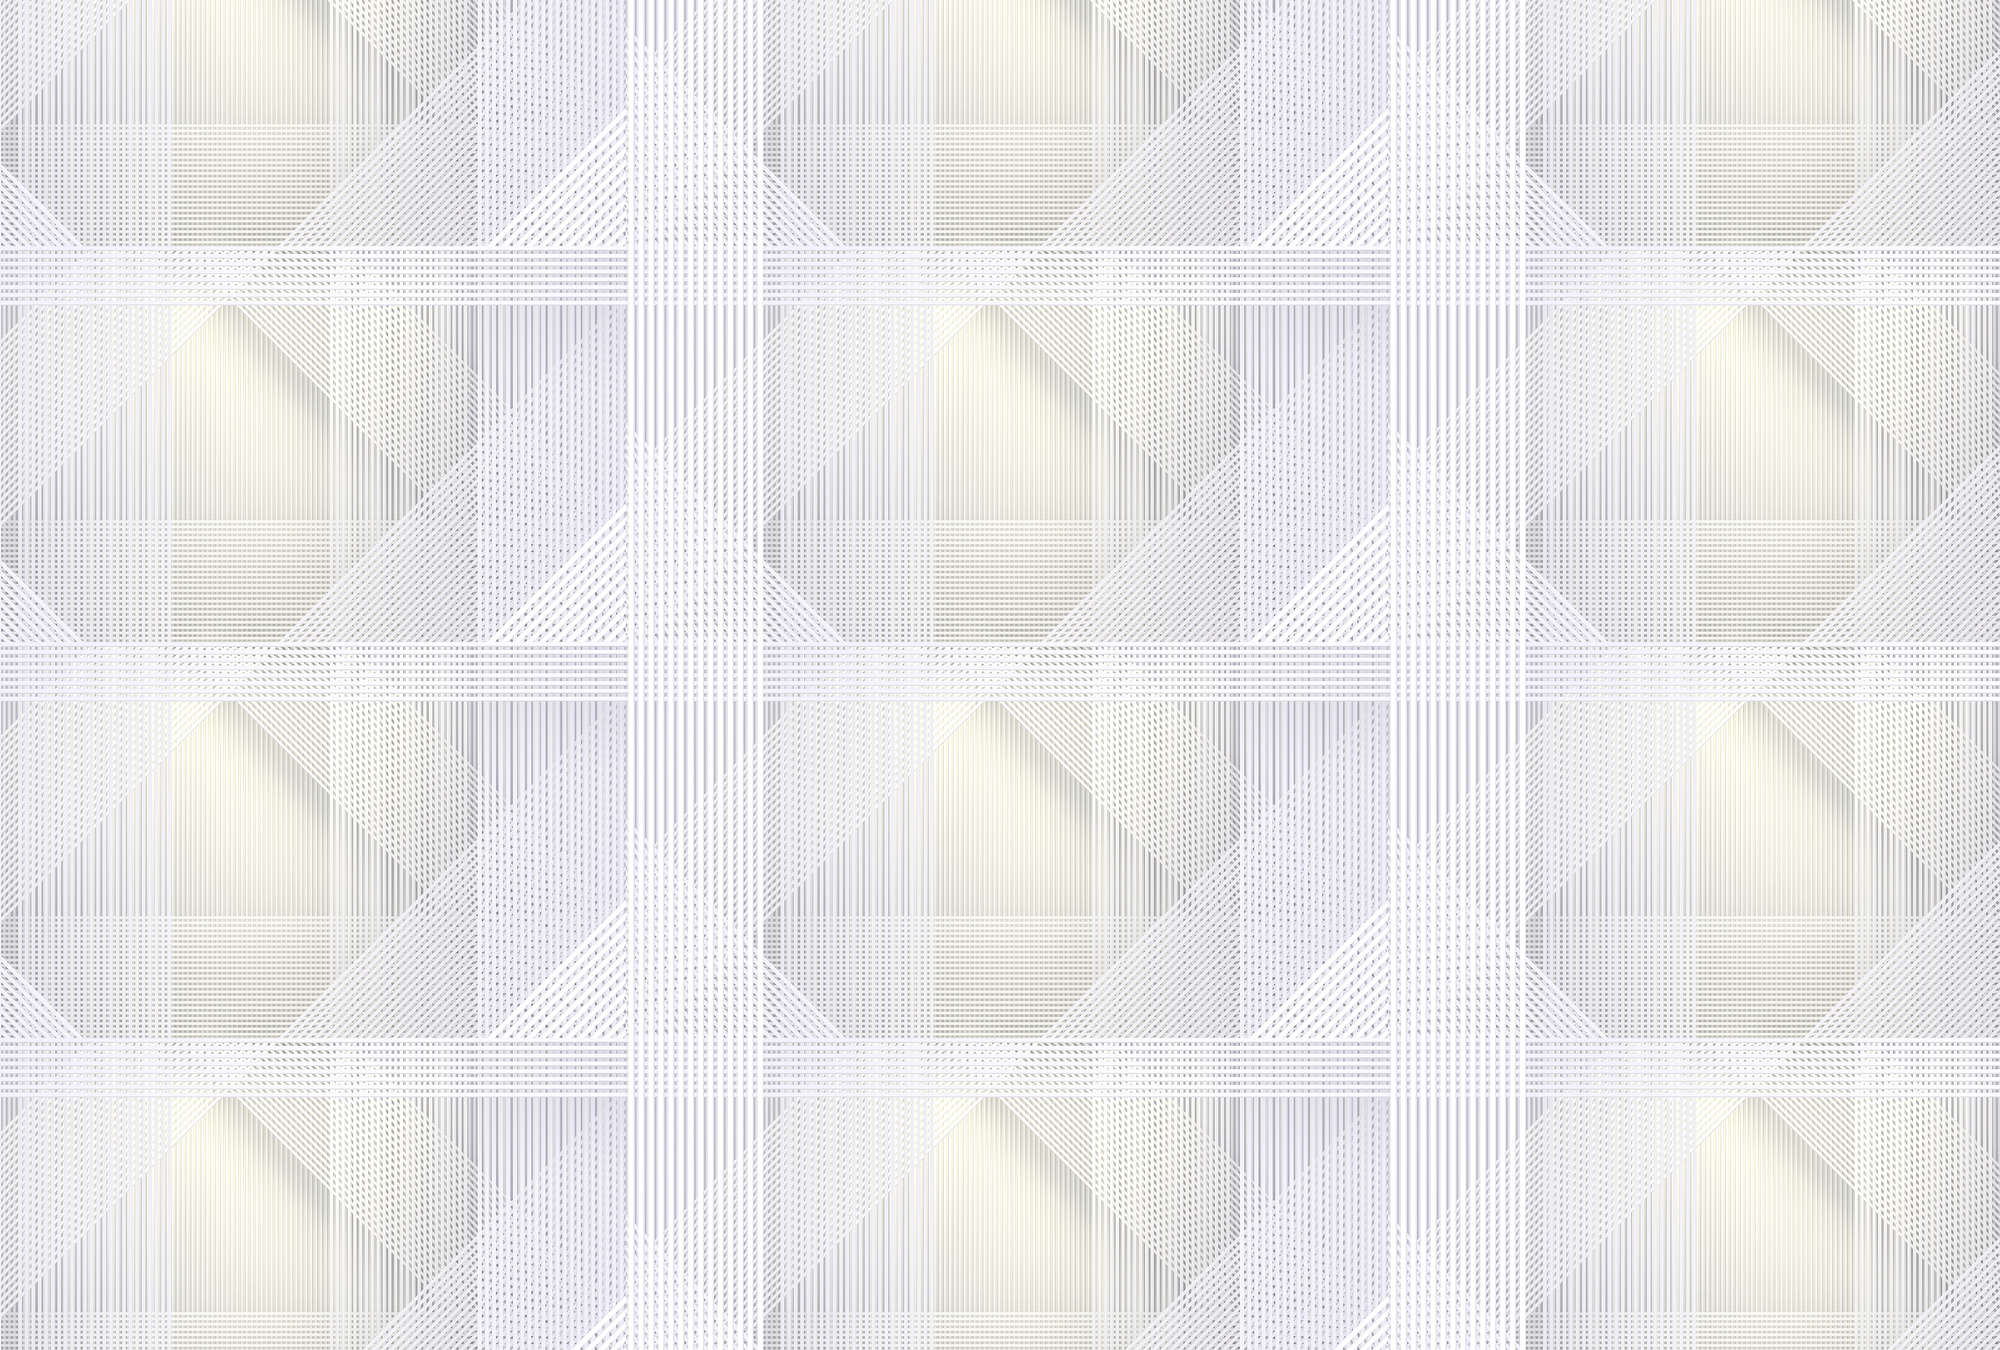             Strings 1 - Fototapete geometrisches Streifen Muster – Gelb, Grau | Perlmutt Glattvlies
        